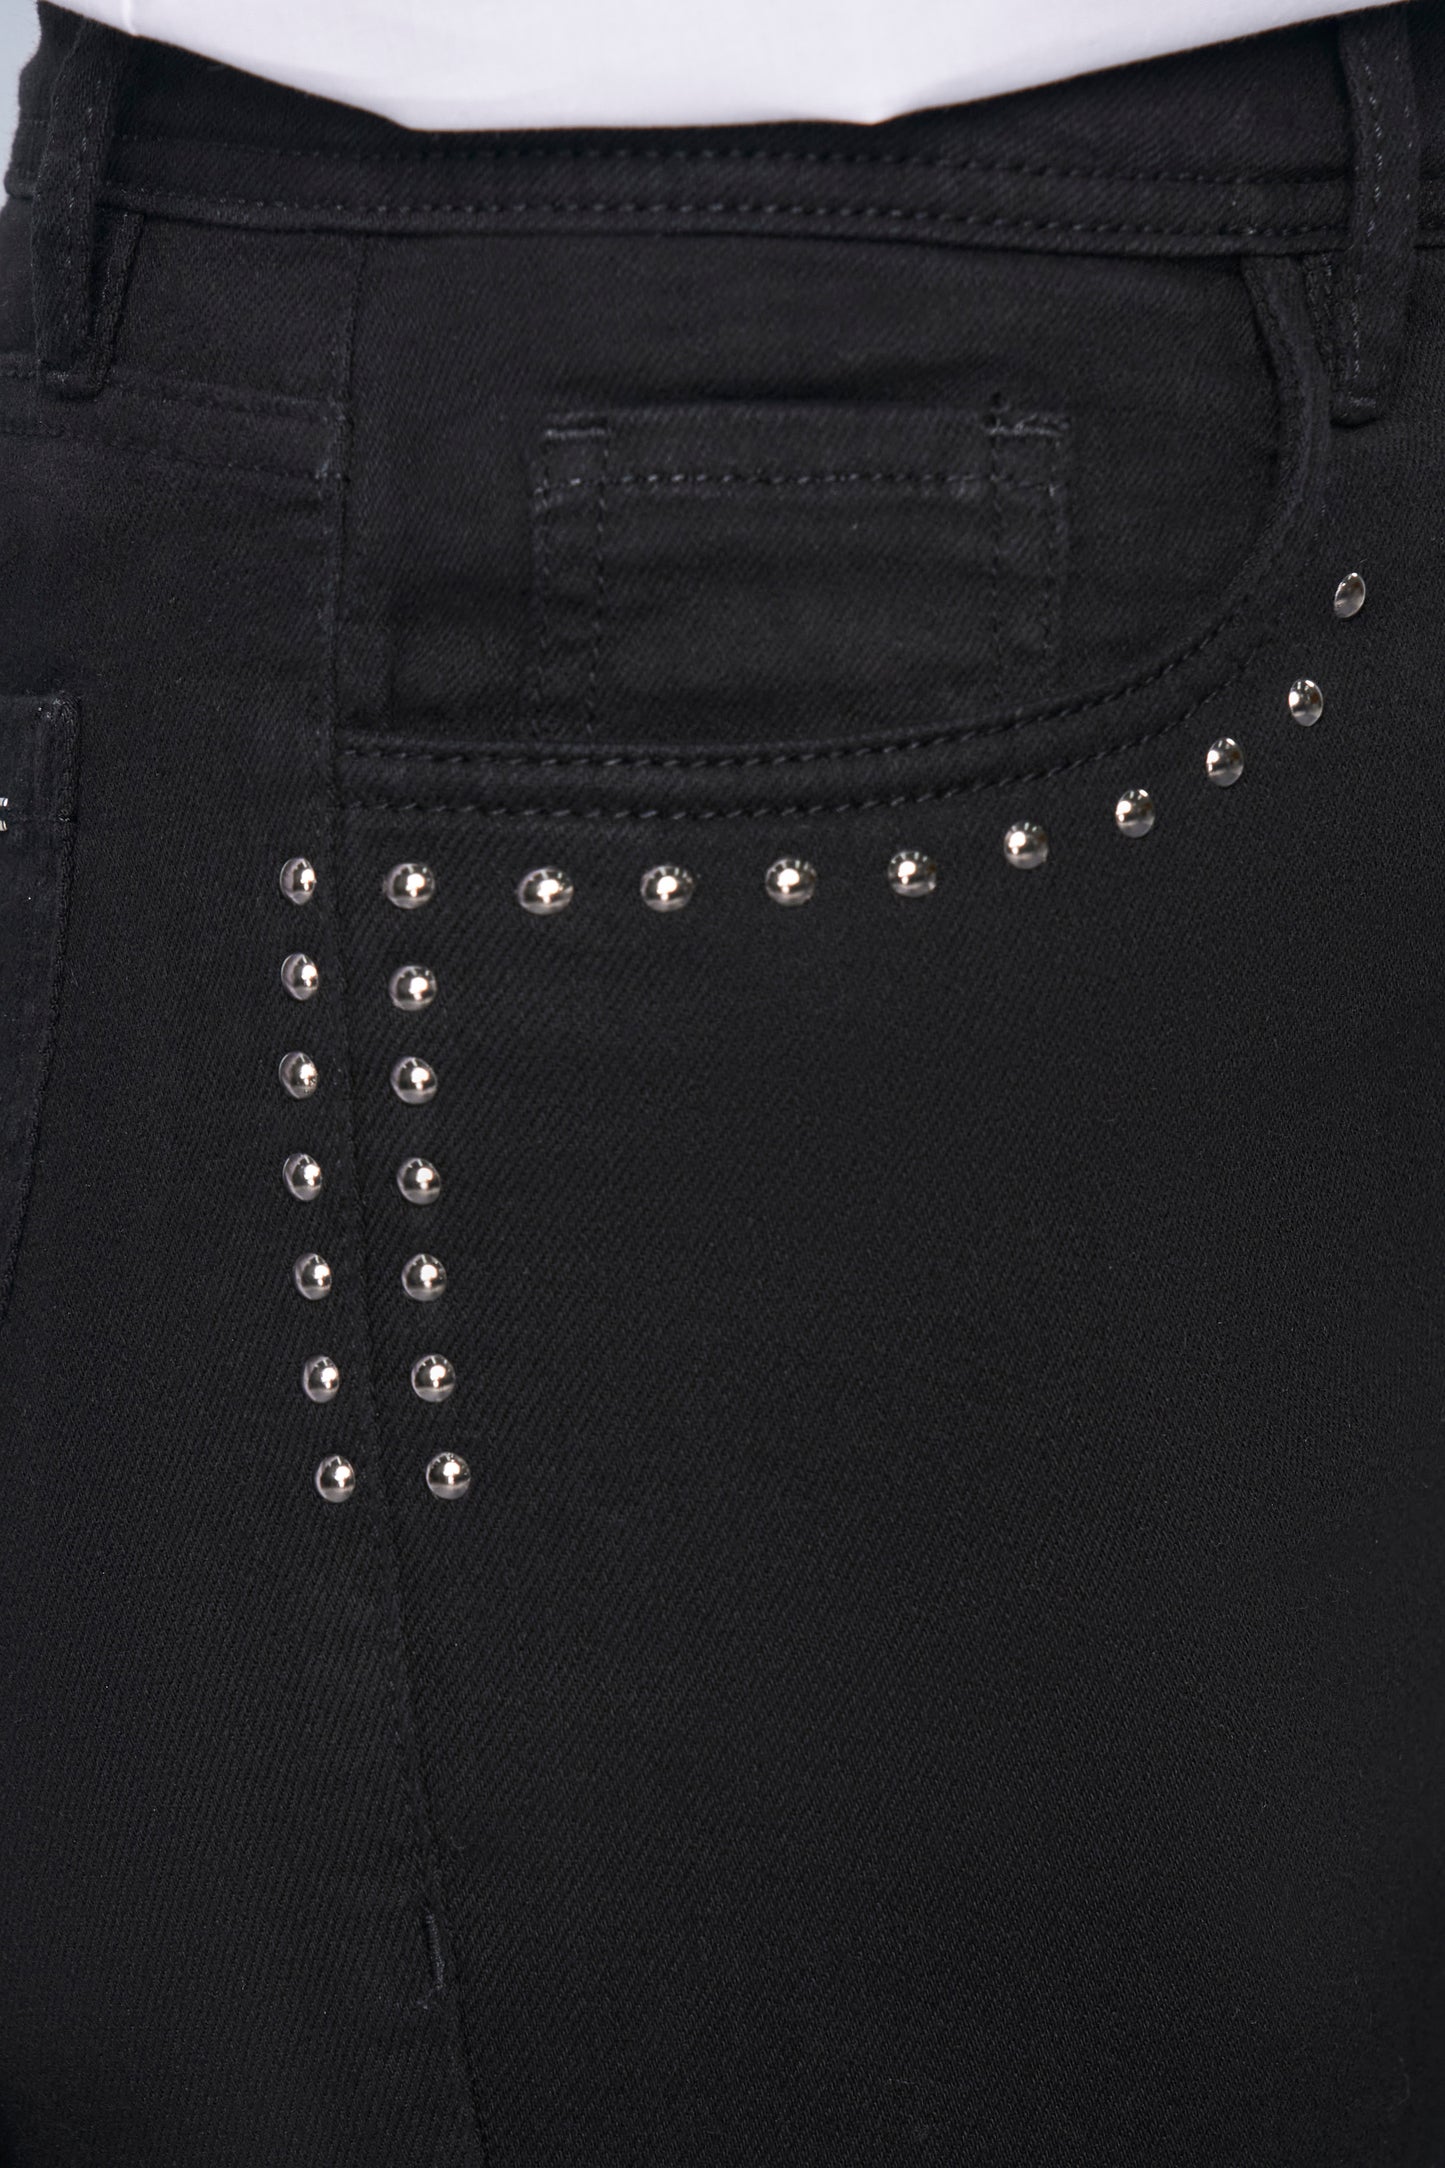 calça jeans black reta cintura intermediária com tachas